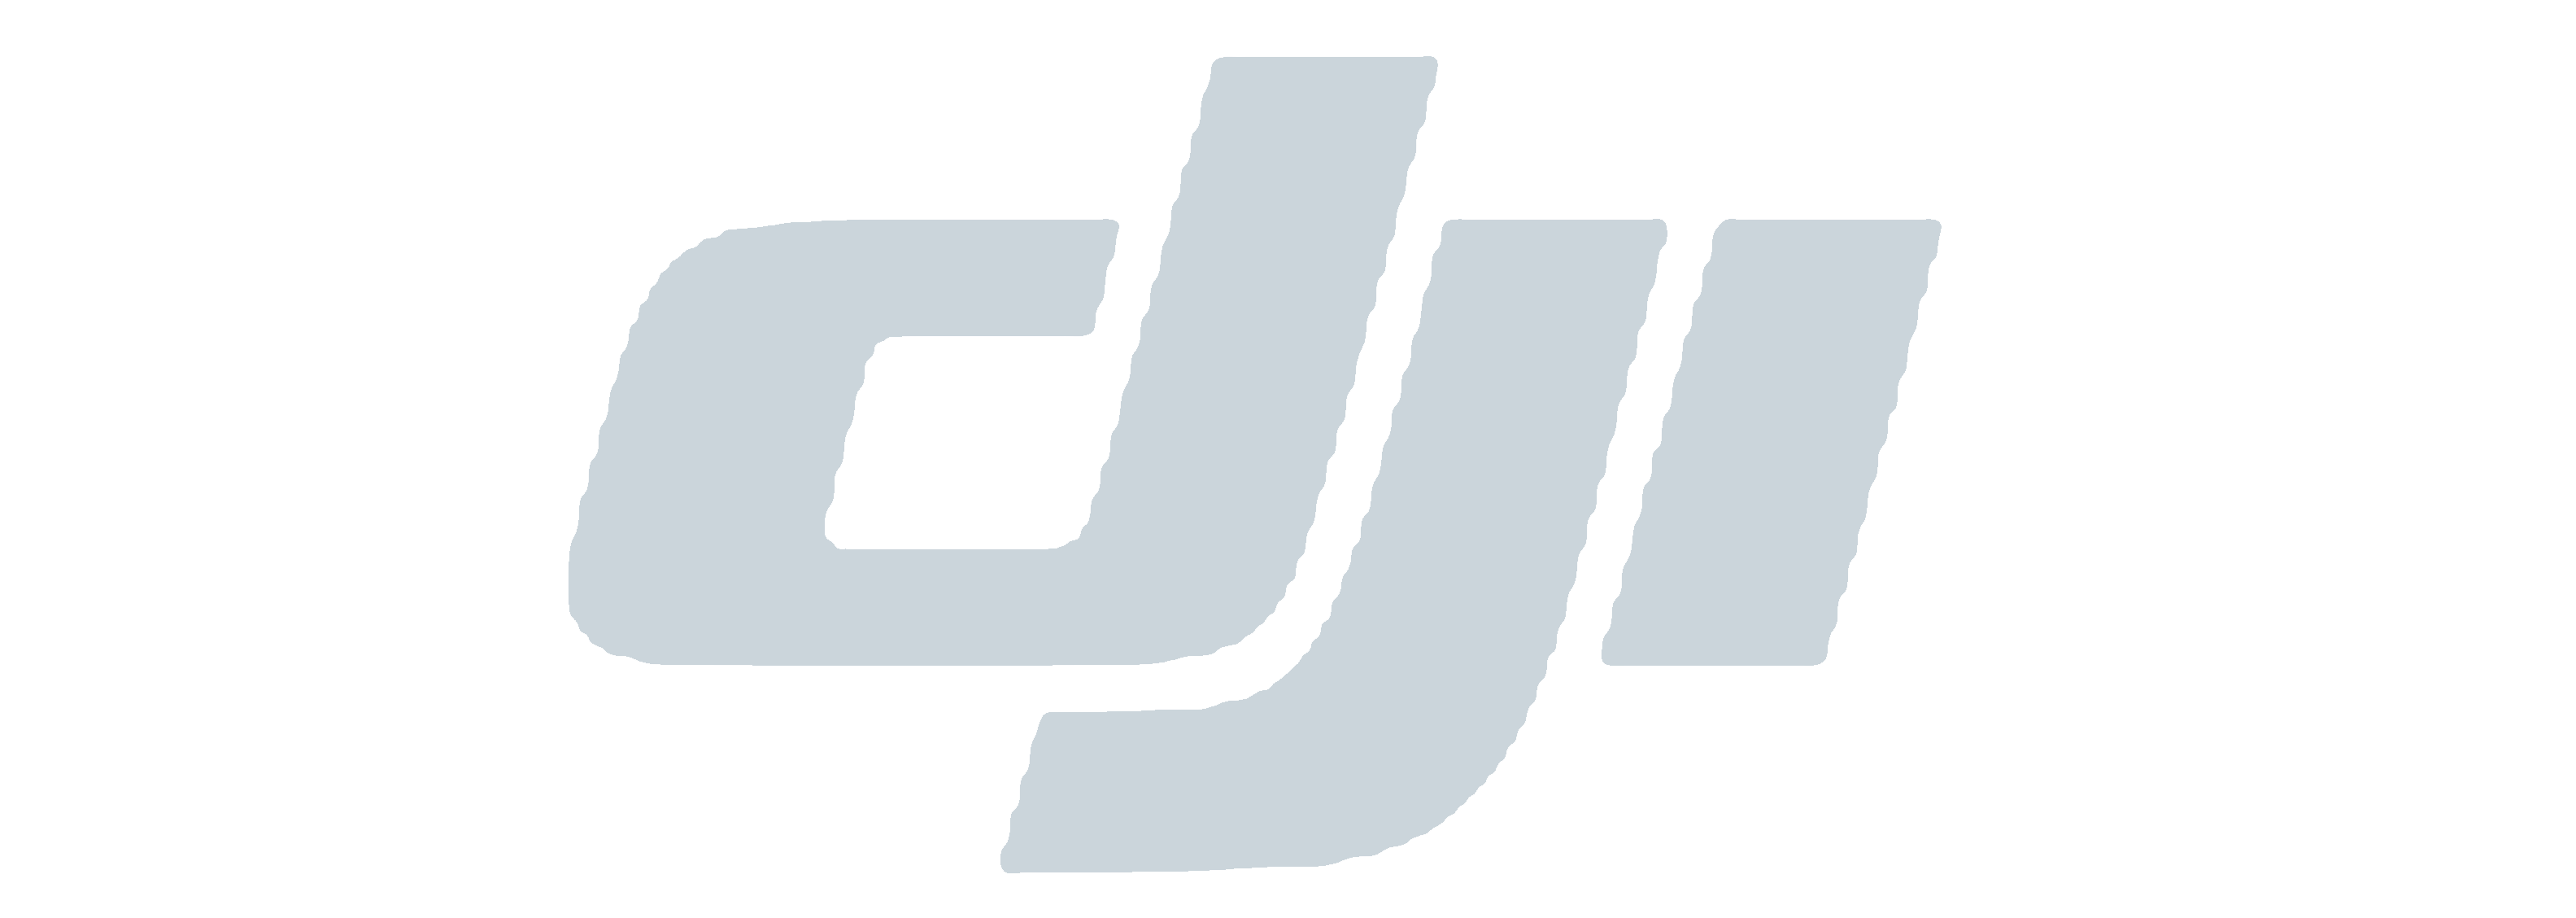 DJI-Logo